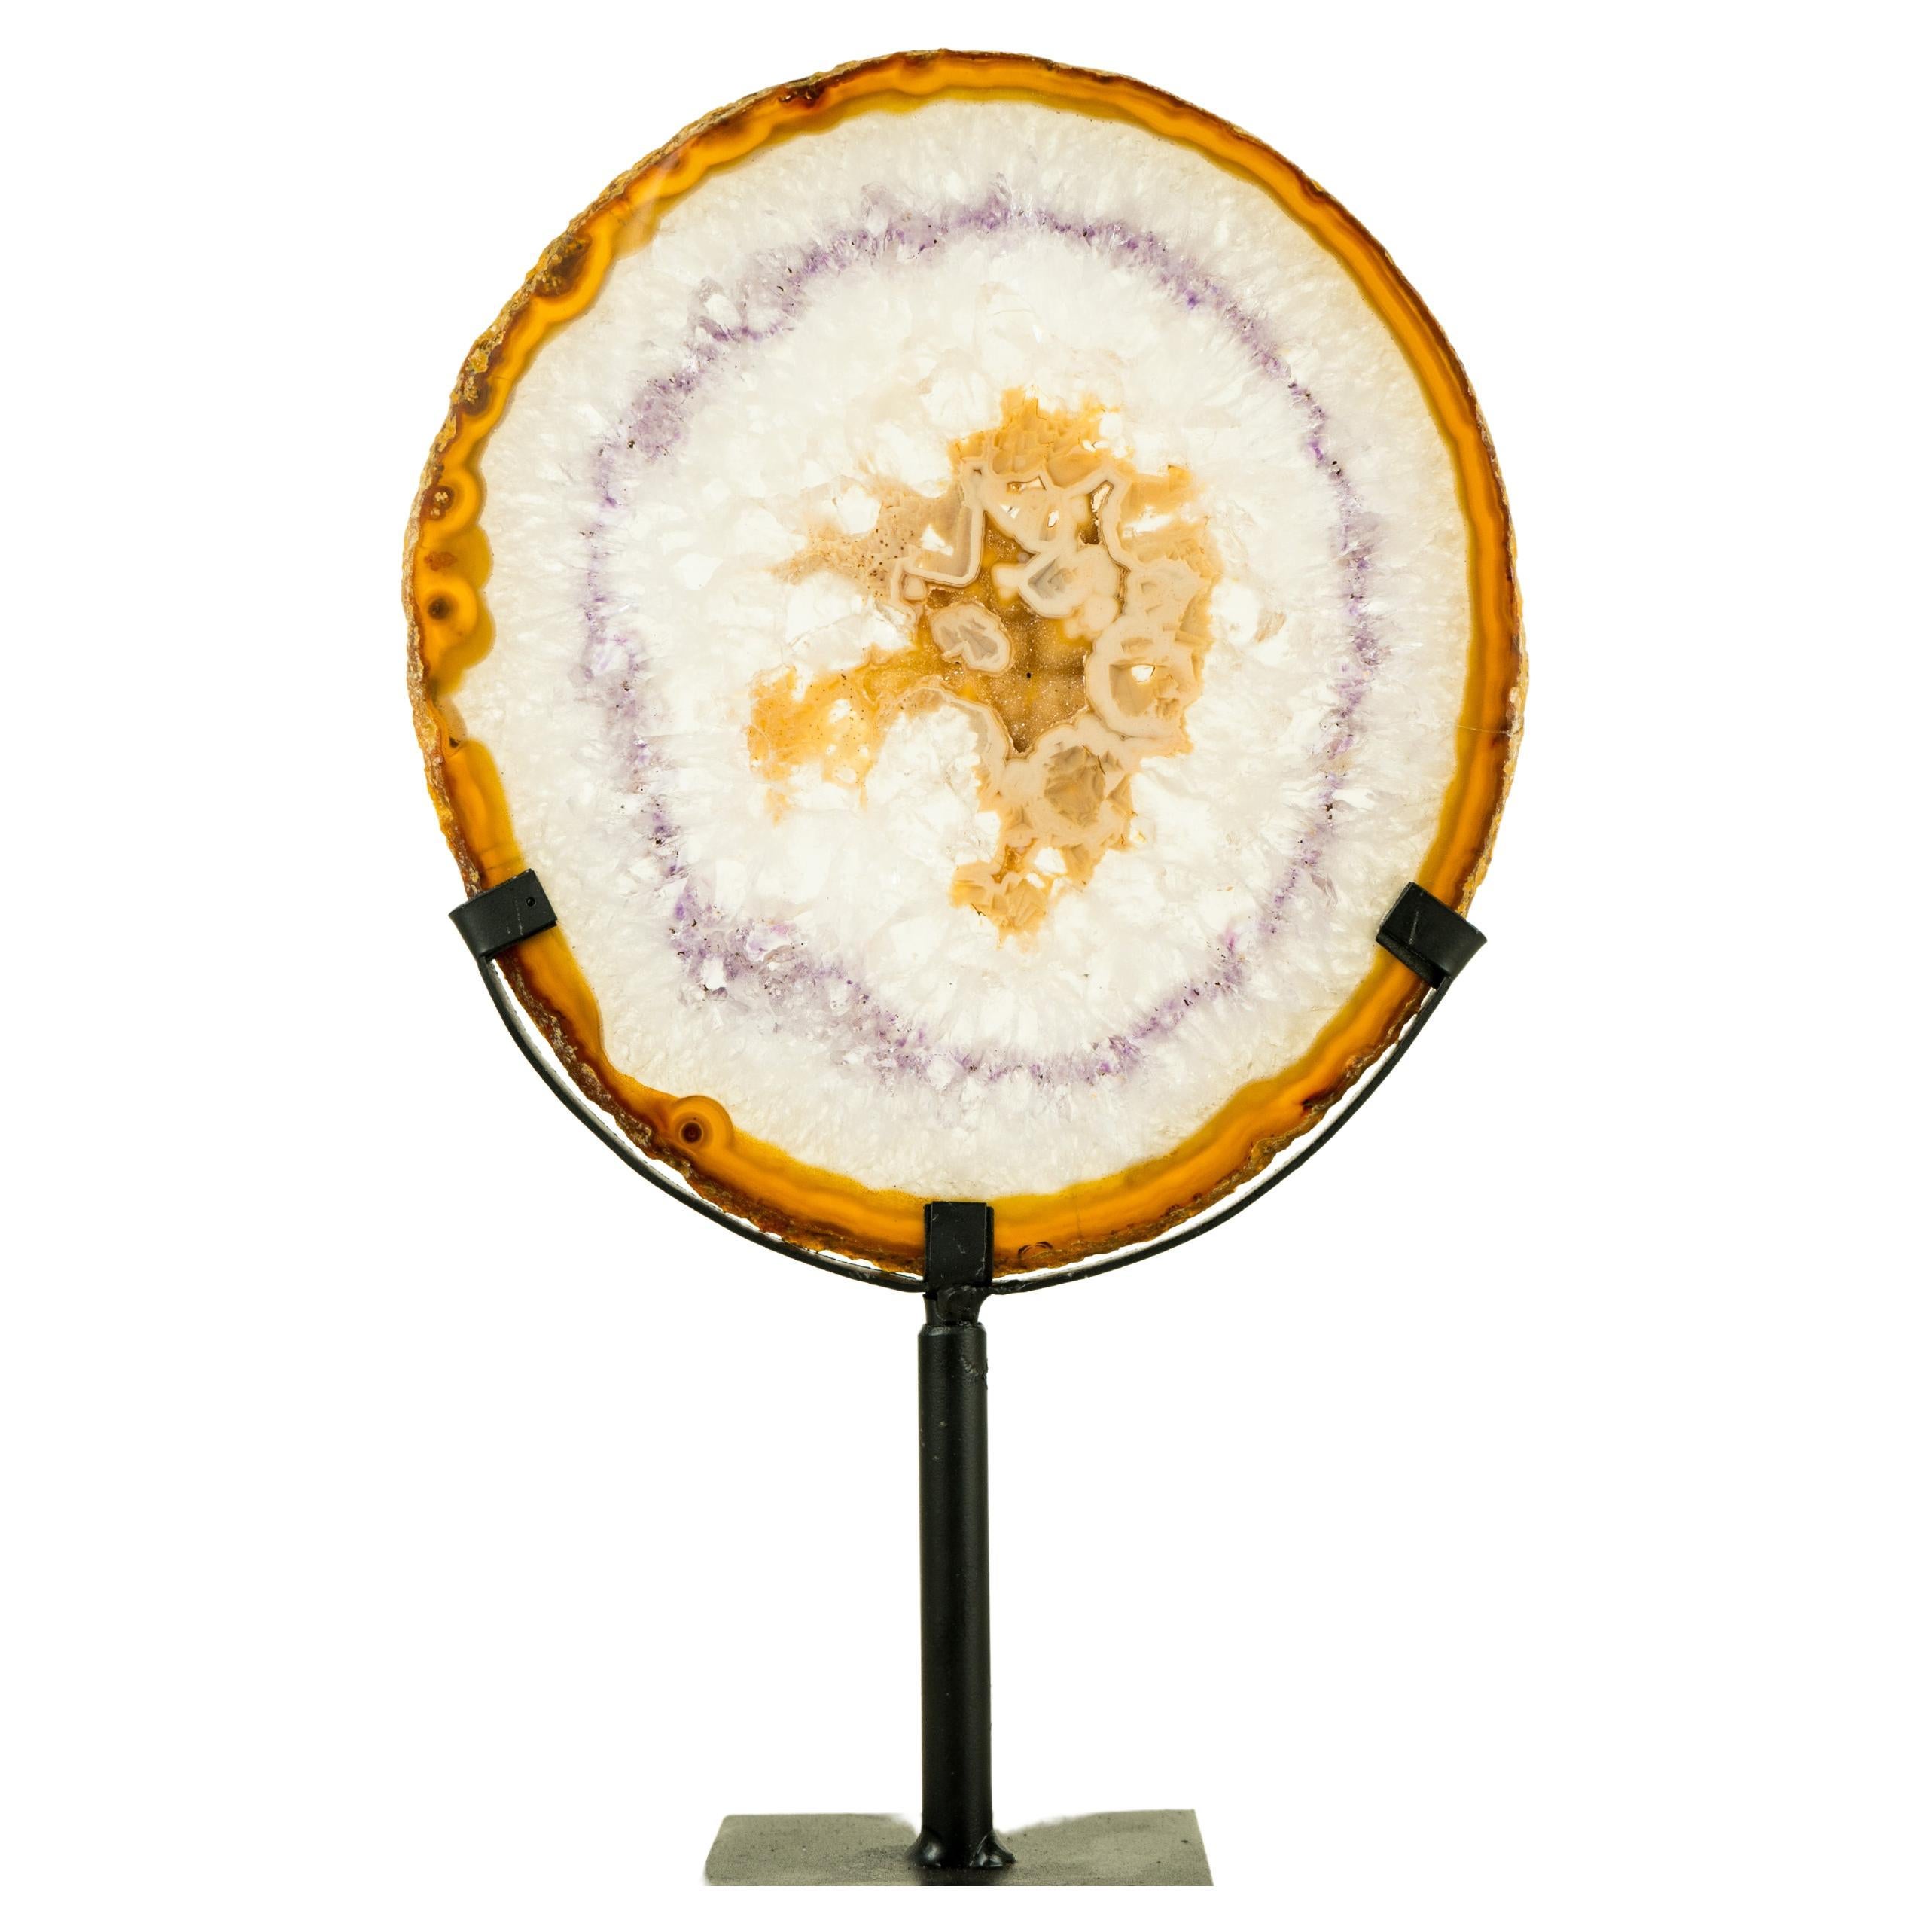 Galeriegeschirr aus natürlichem Spitzenachat in Galerieform mit seltenen Spitzenspitzen, Farben und Druzy